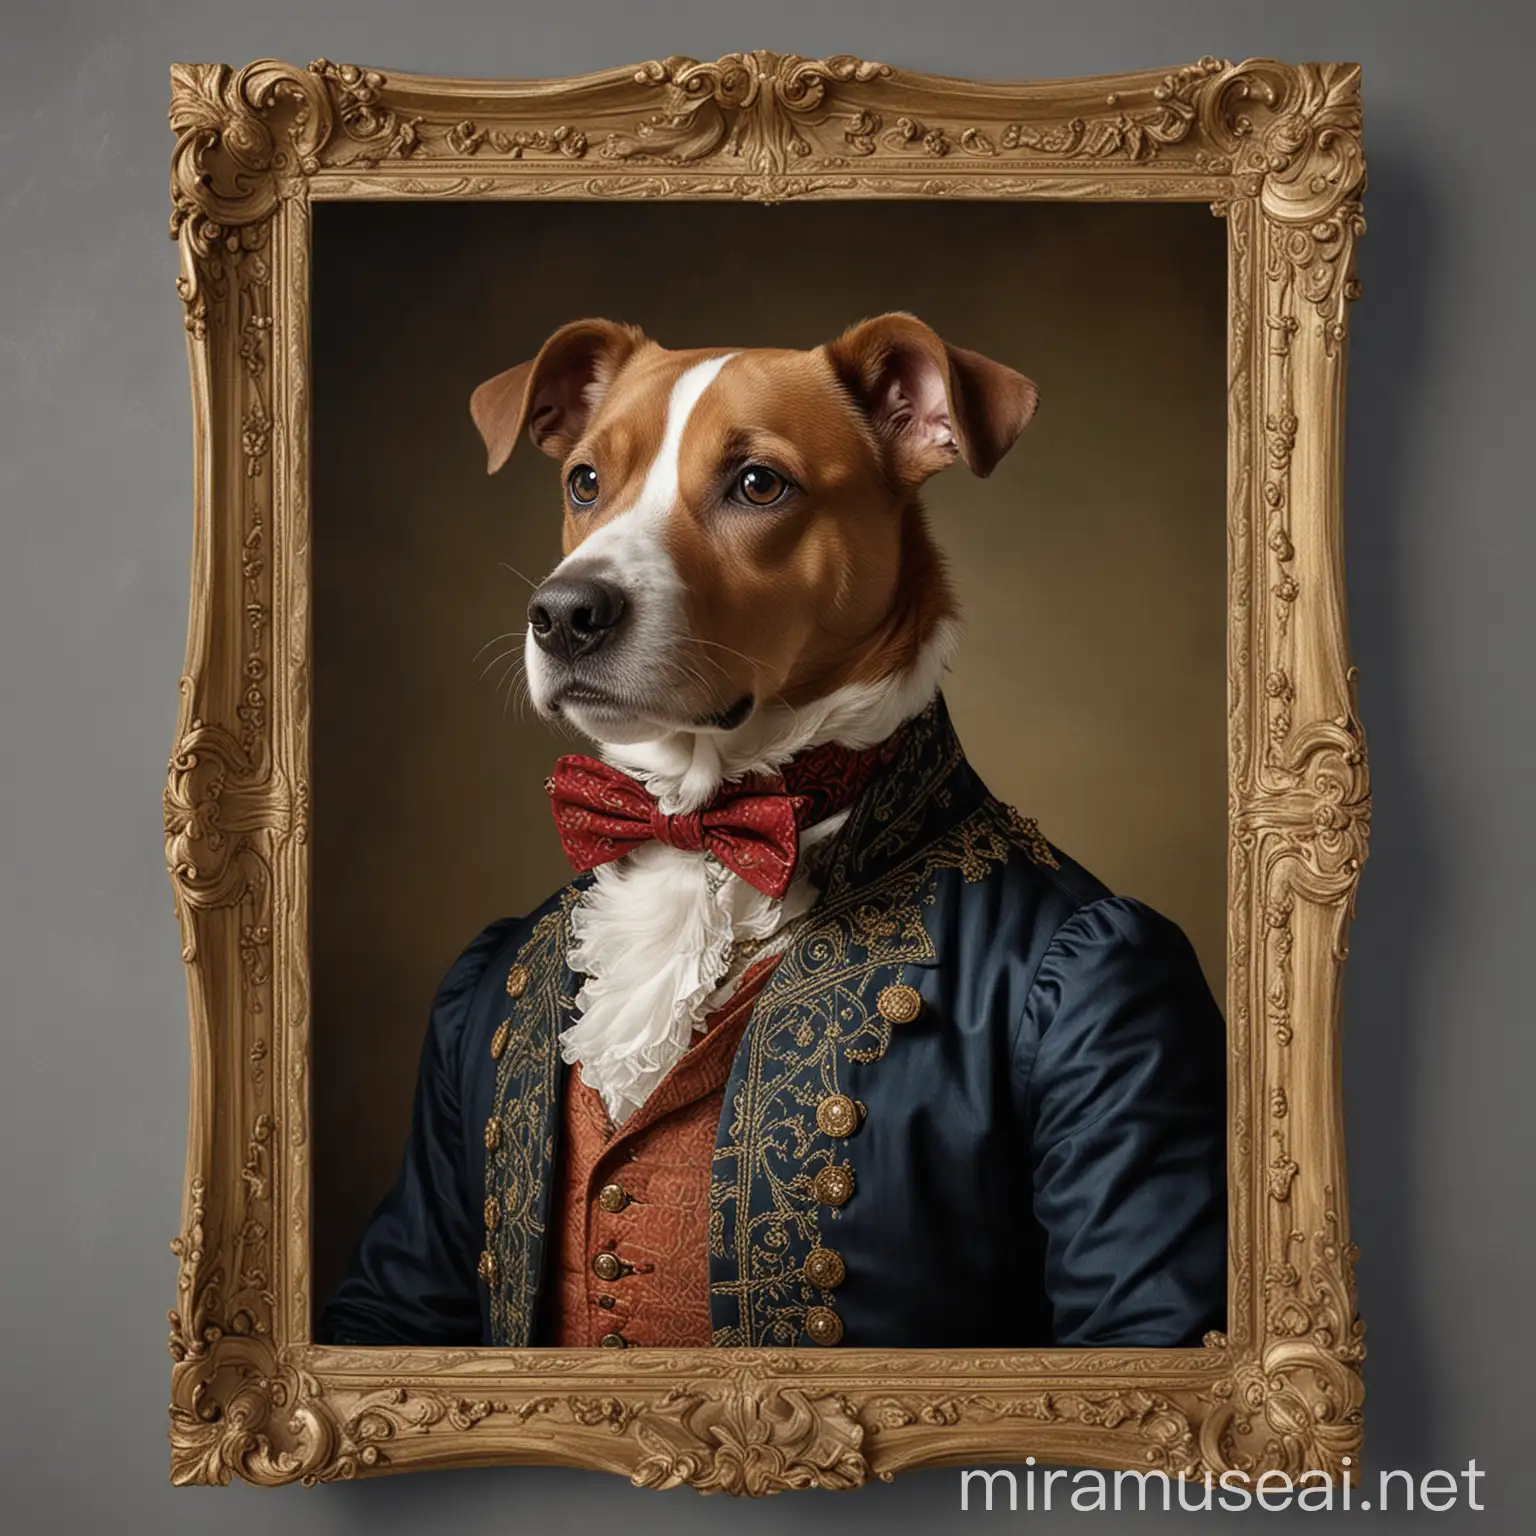 Dog in 17th Century Gentleman Attire Portrait